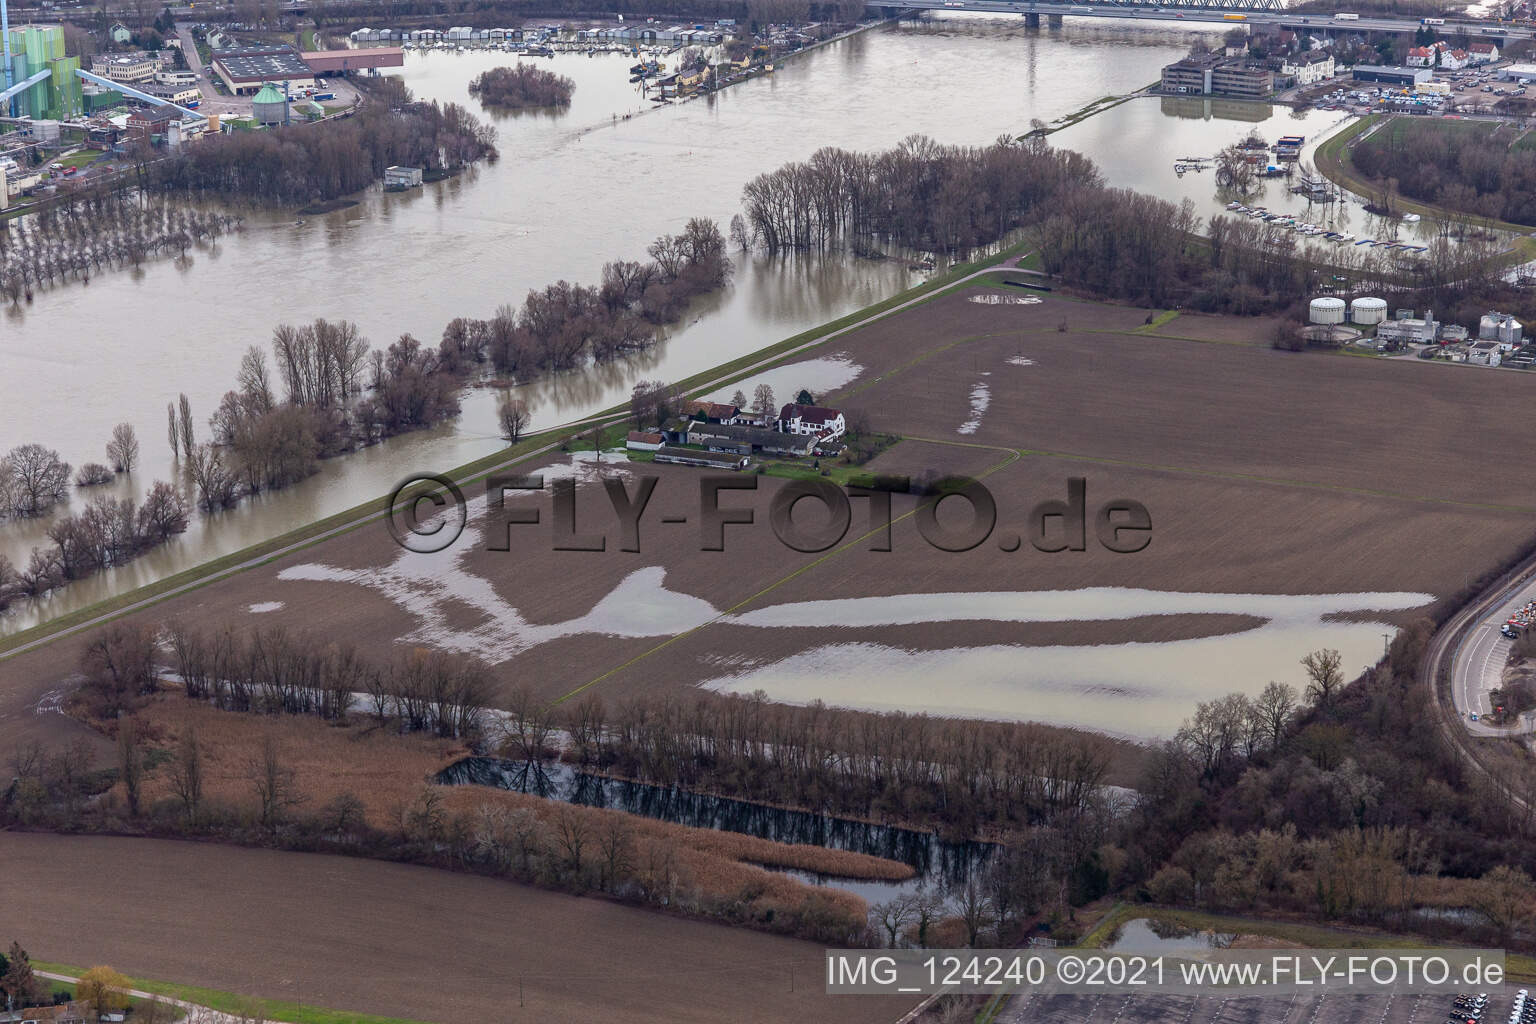 Aerial view of Hofgut Ludwigsau near Rhine floods in the district Maximiliansau in Wörth am Rhein in the state Rhineland-Palatinate, Germany